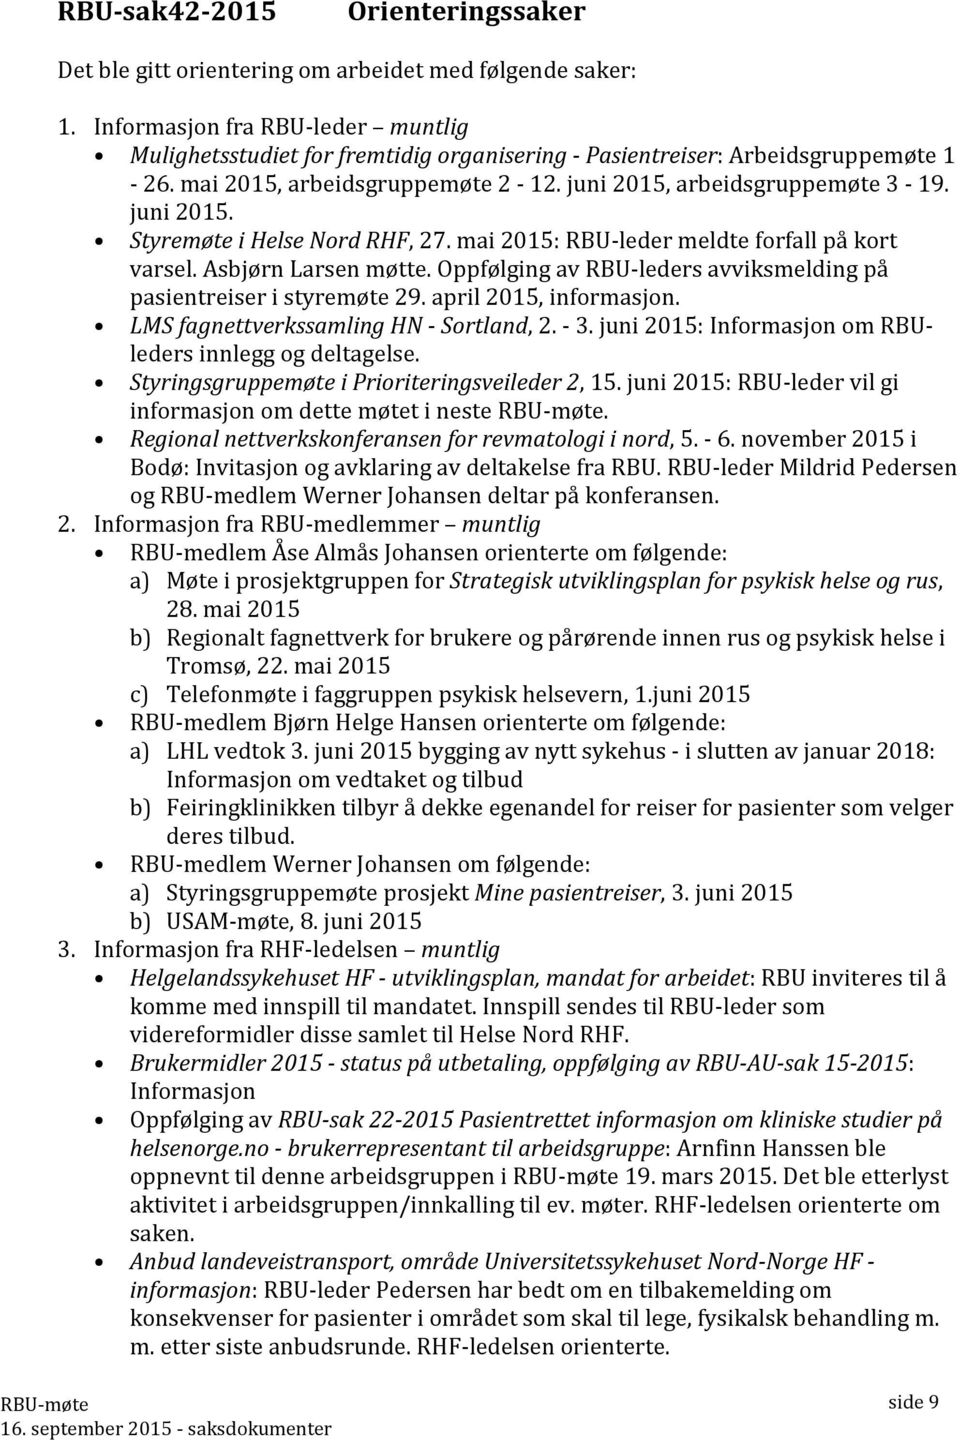 mai 2015: RBU-leder meldte forfall på kort varsel. Asbjørn Larsen møtte. Oppfølging av RBU-leders avviksmelding på pasientreiser i styremøte 29. april 2015, informasjon.